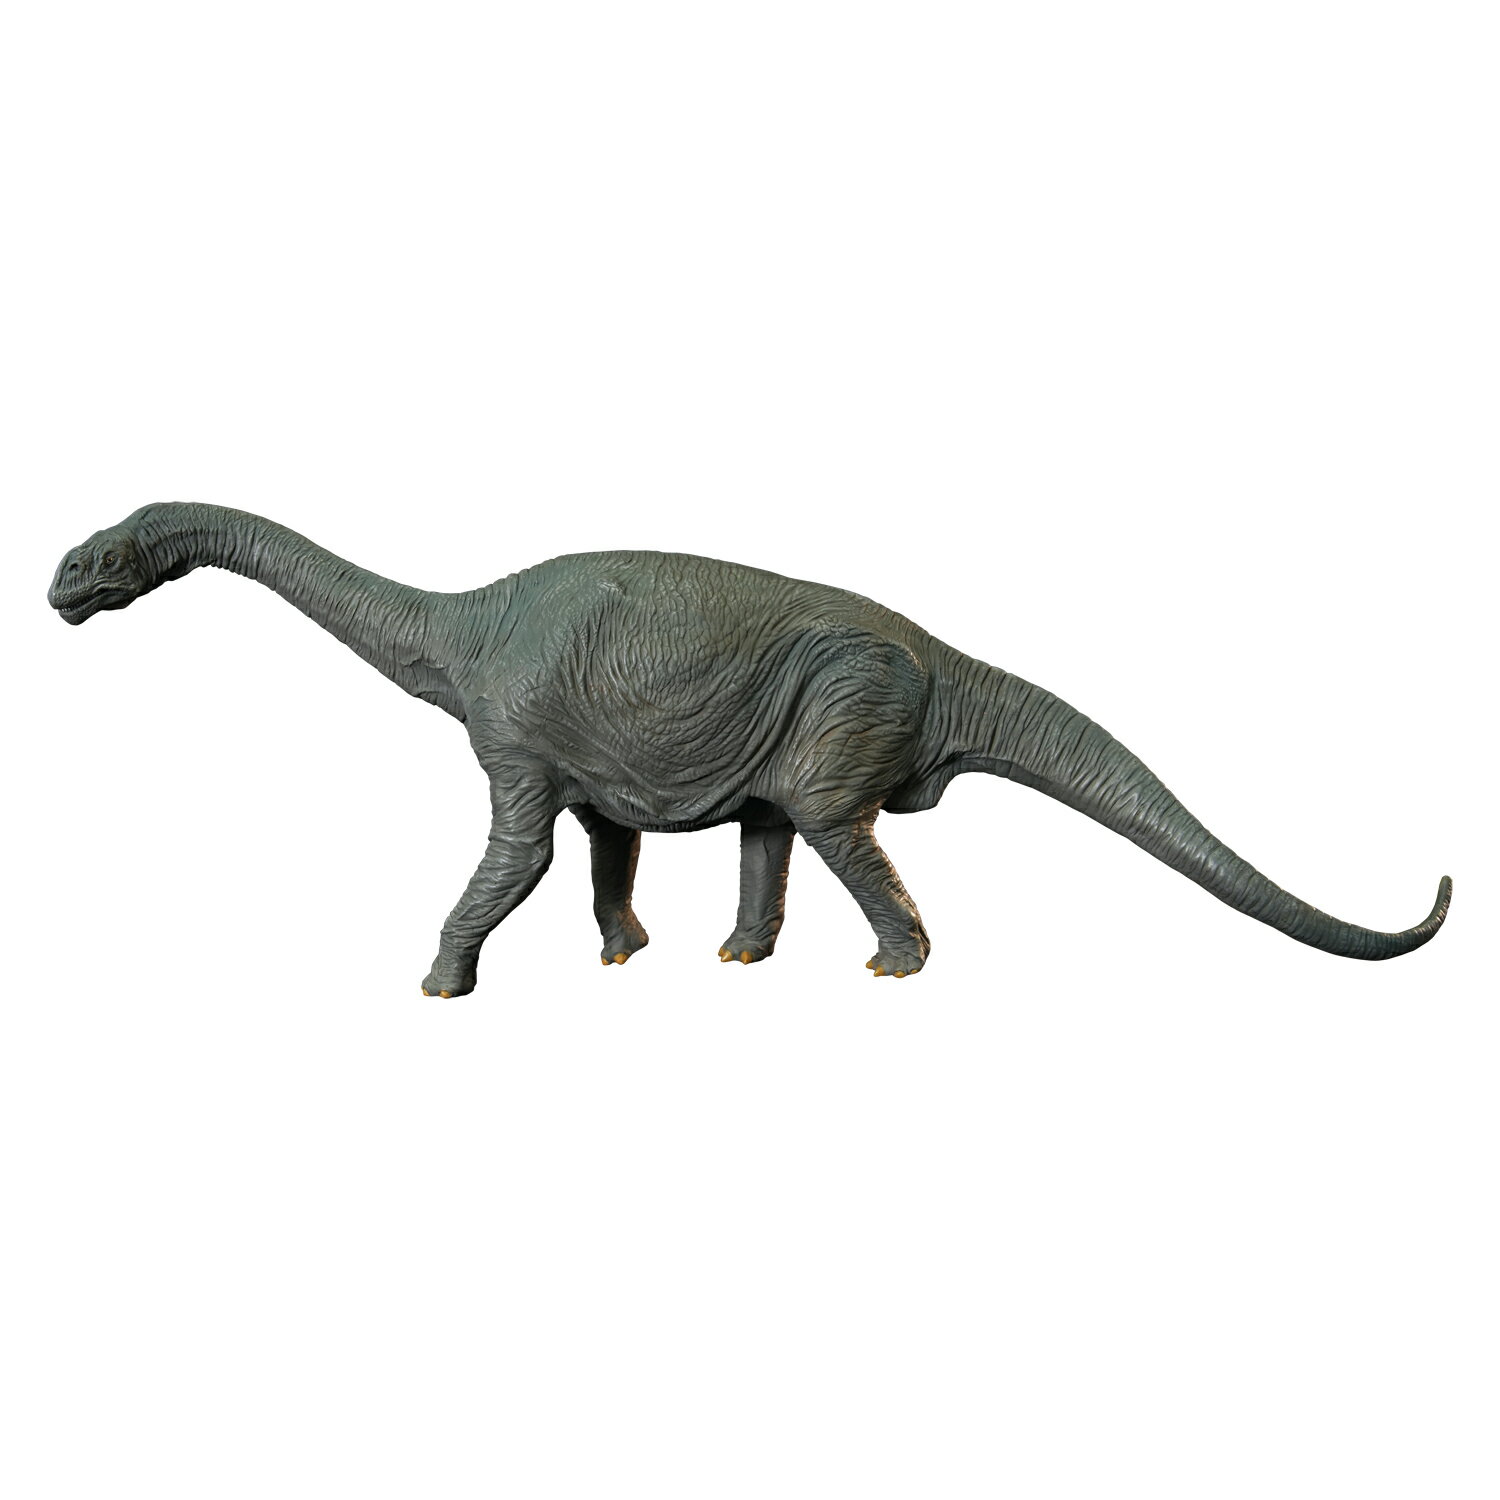 ユニオンクリエイティブ カマラサウルス ミドル ソフビキット復刻版 発売前予約 受注生産の為キャンセル不可